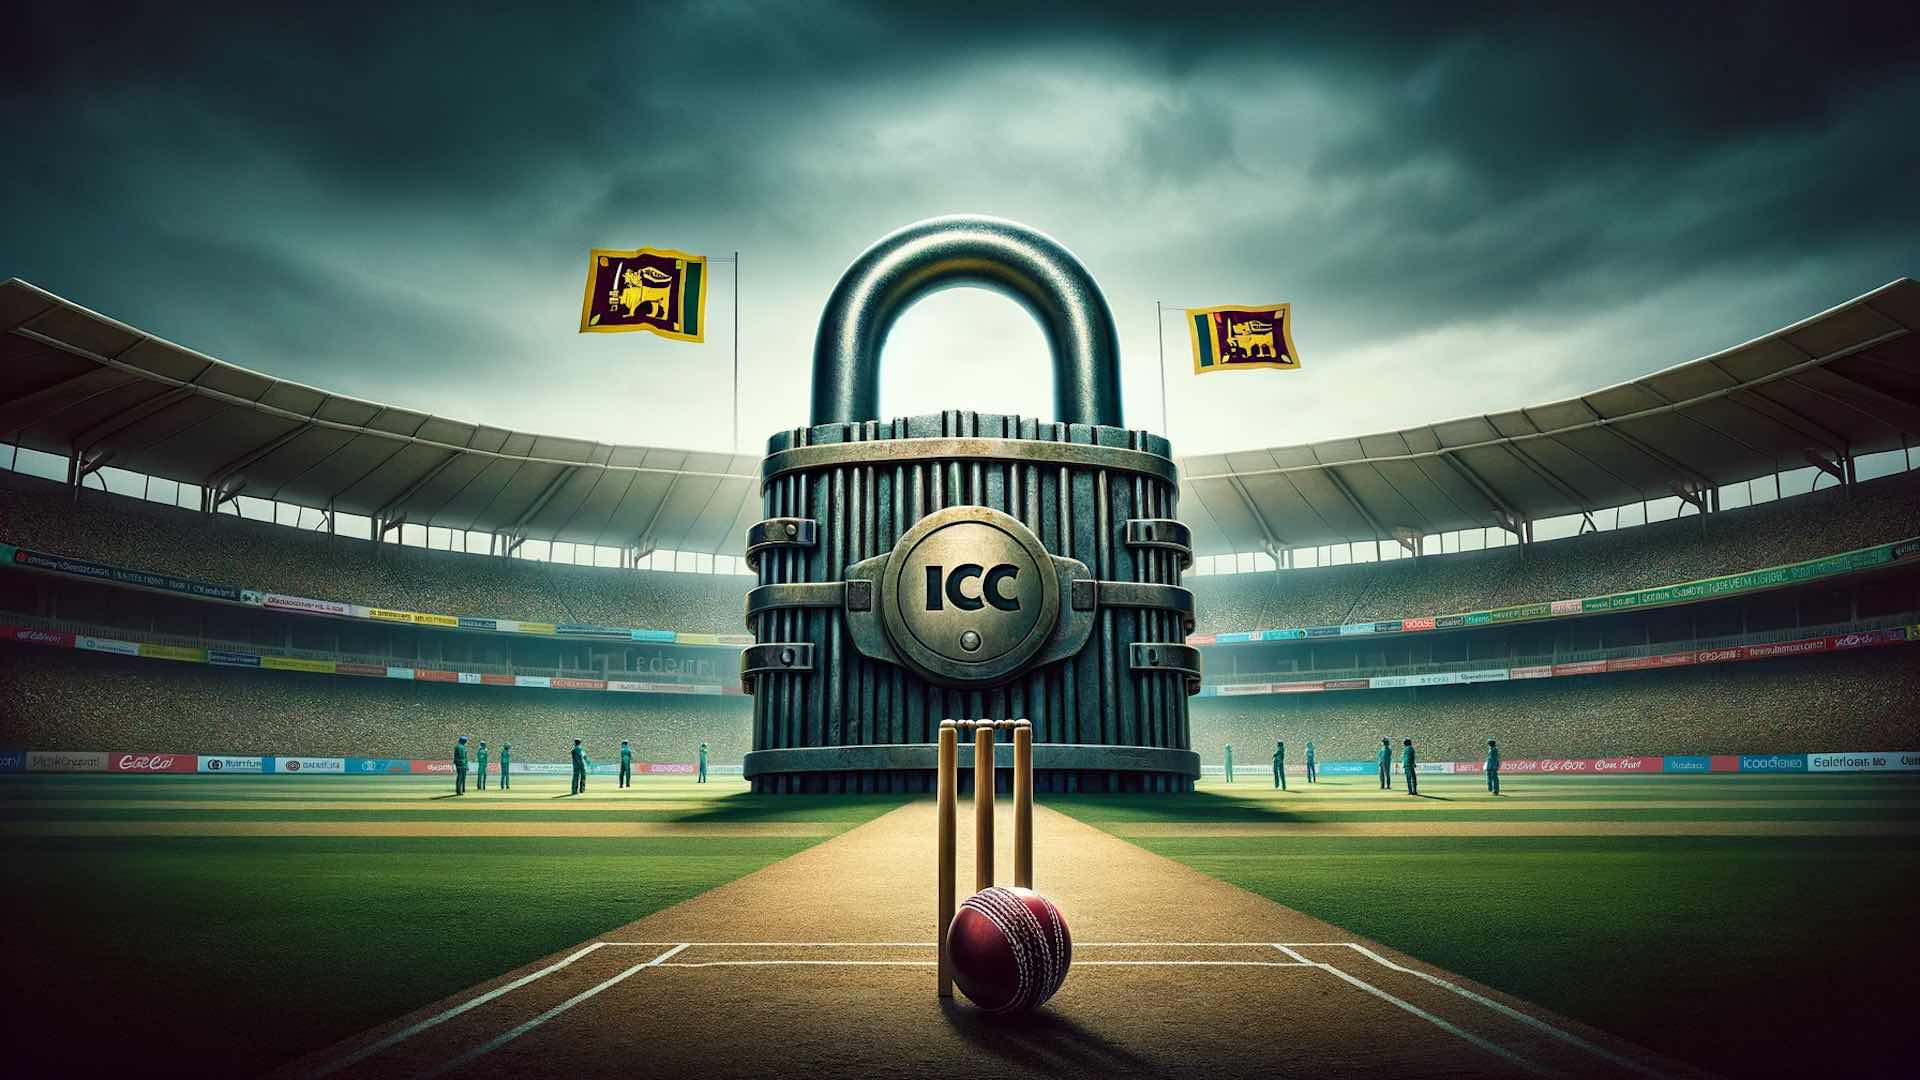 सरकारी हस्तक्षेप के कारण आईसीसी ने श्रीलंका क्रिकेट को निलंबित कर दिया